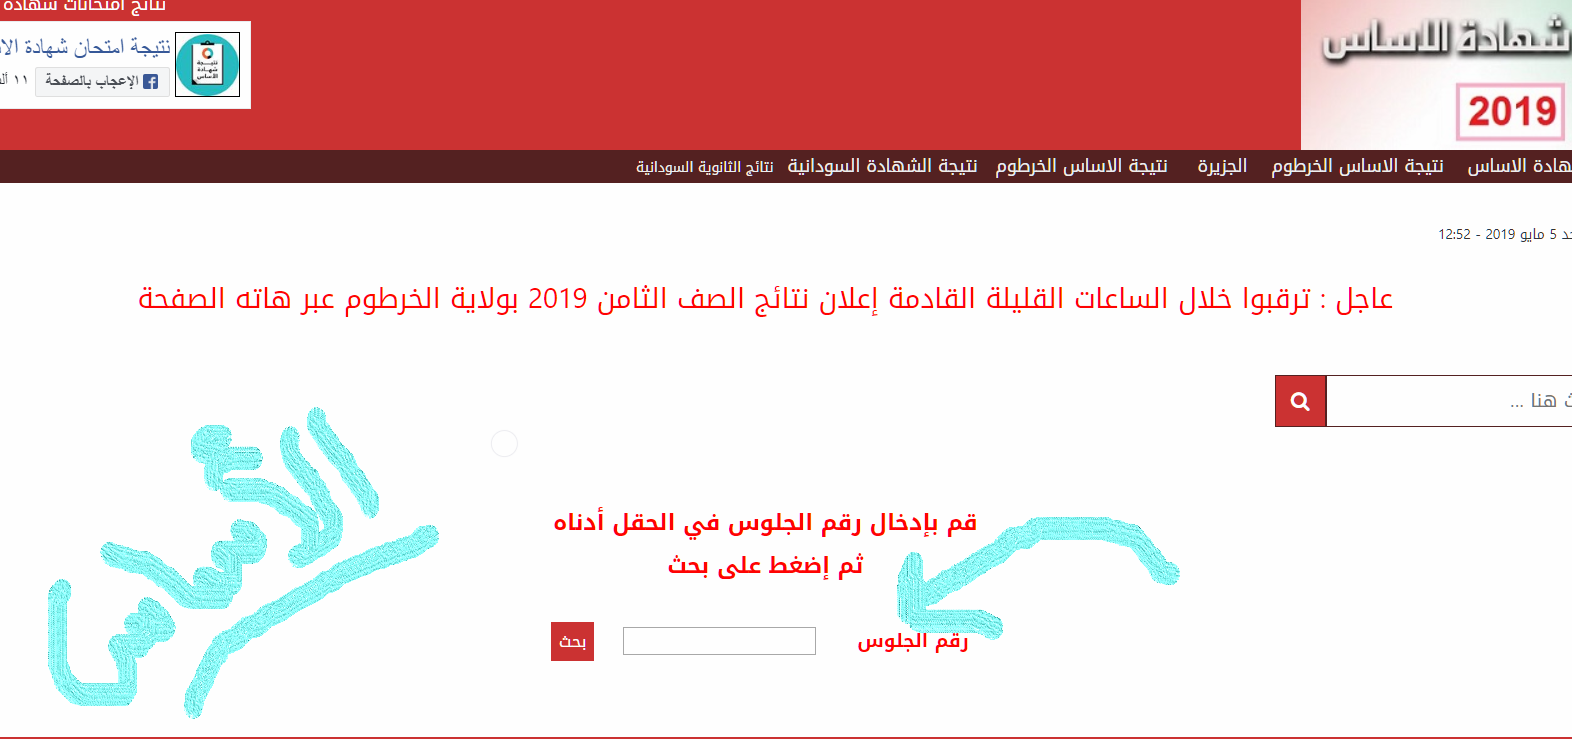 معرفة نتائج الخرطوم 2019 | رابط موقع وزارة التربية والتعليم السودانية sudanresults معرفة نتيجة الصف الثامن بولاية الخرطوم